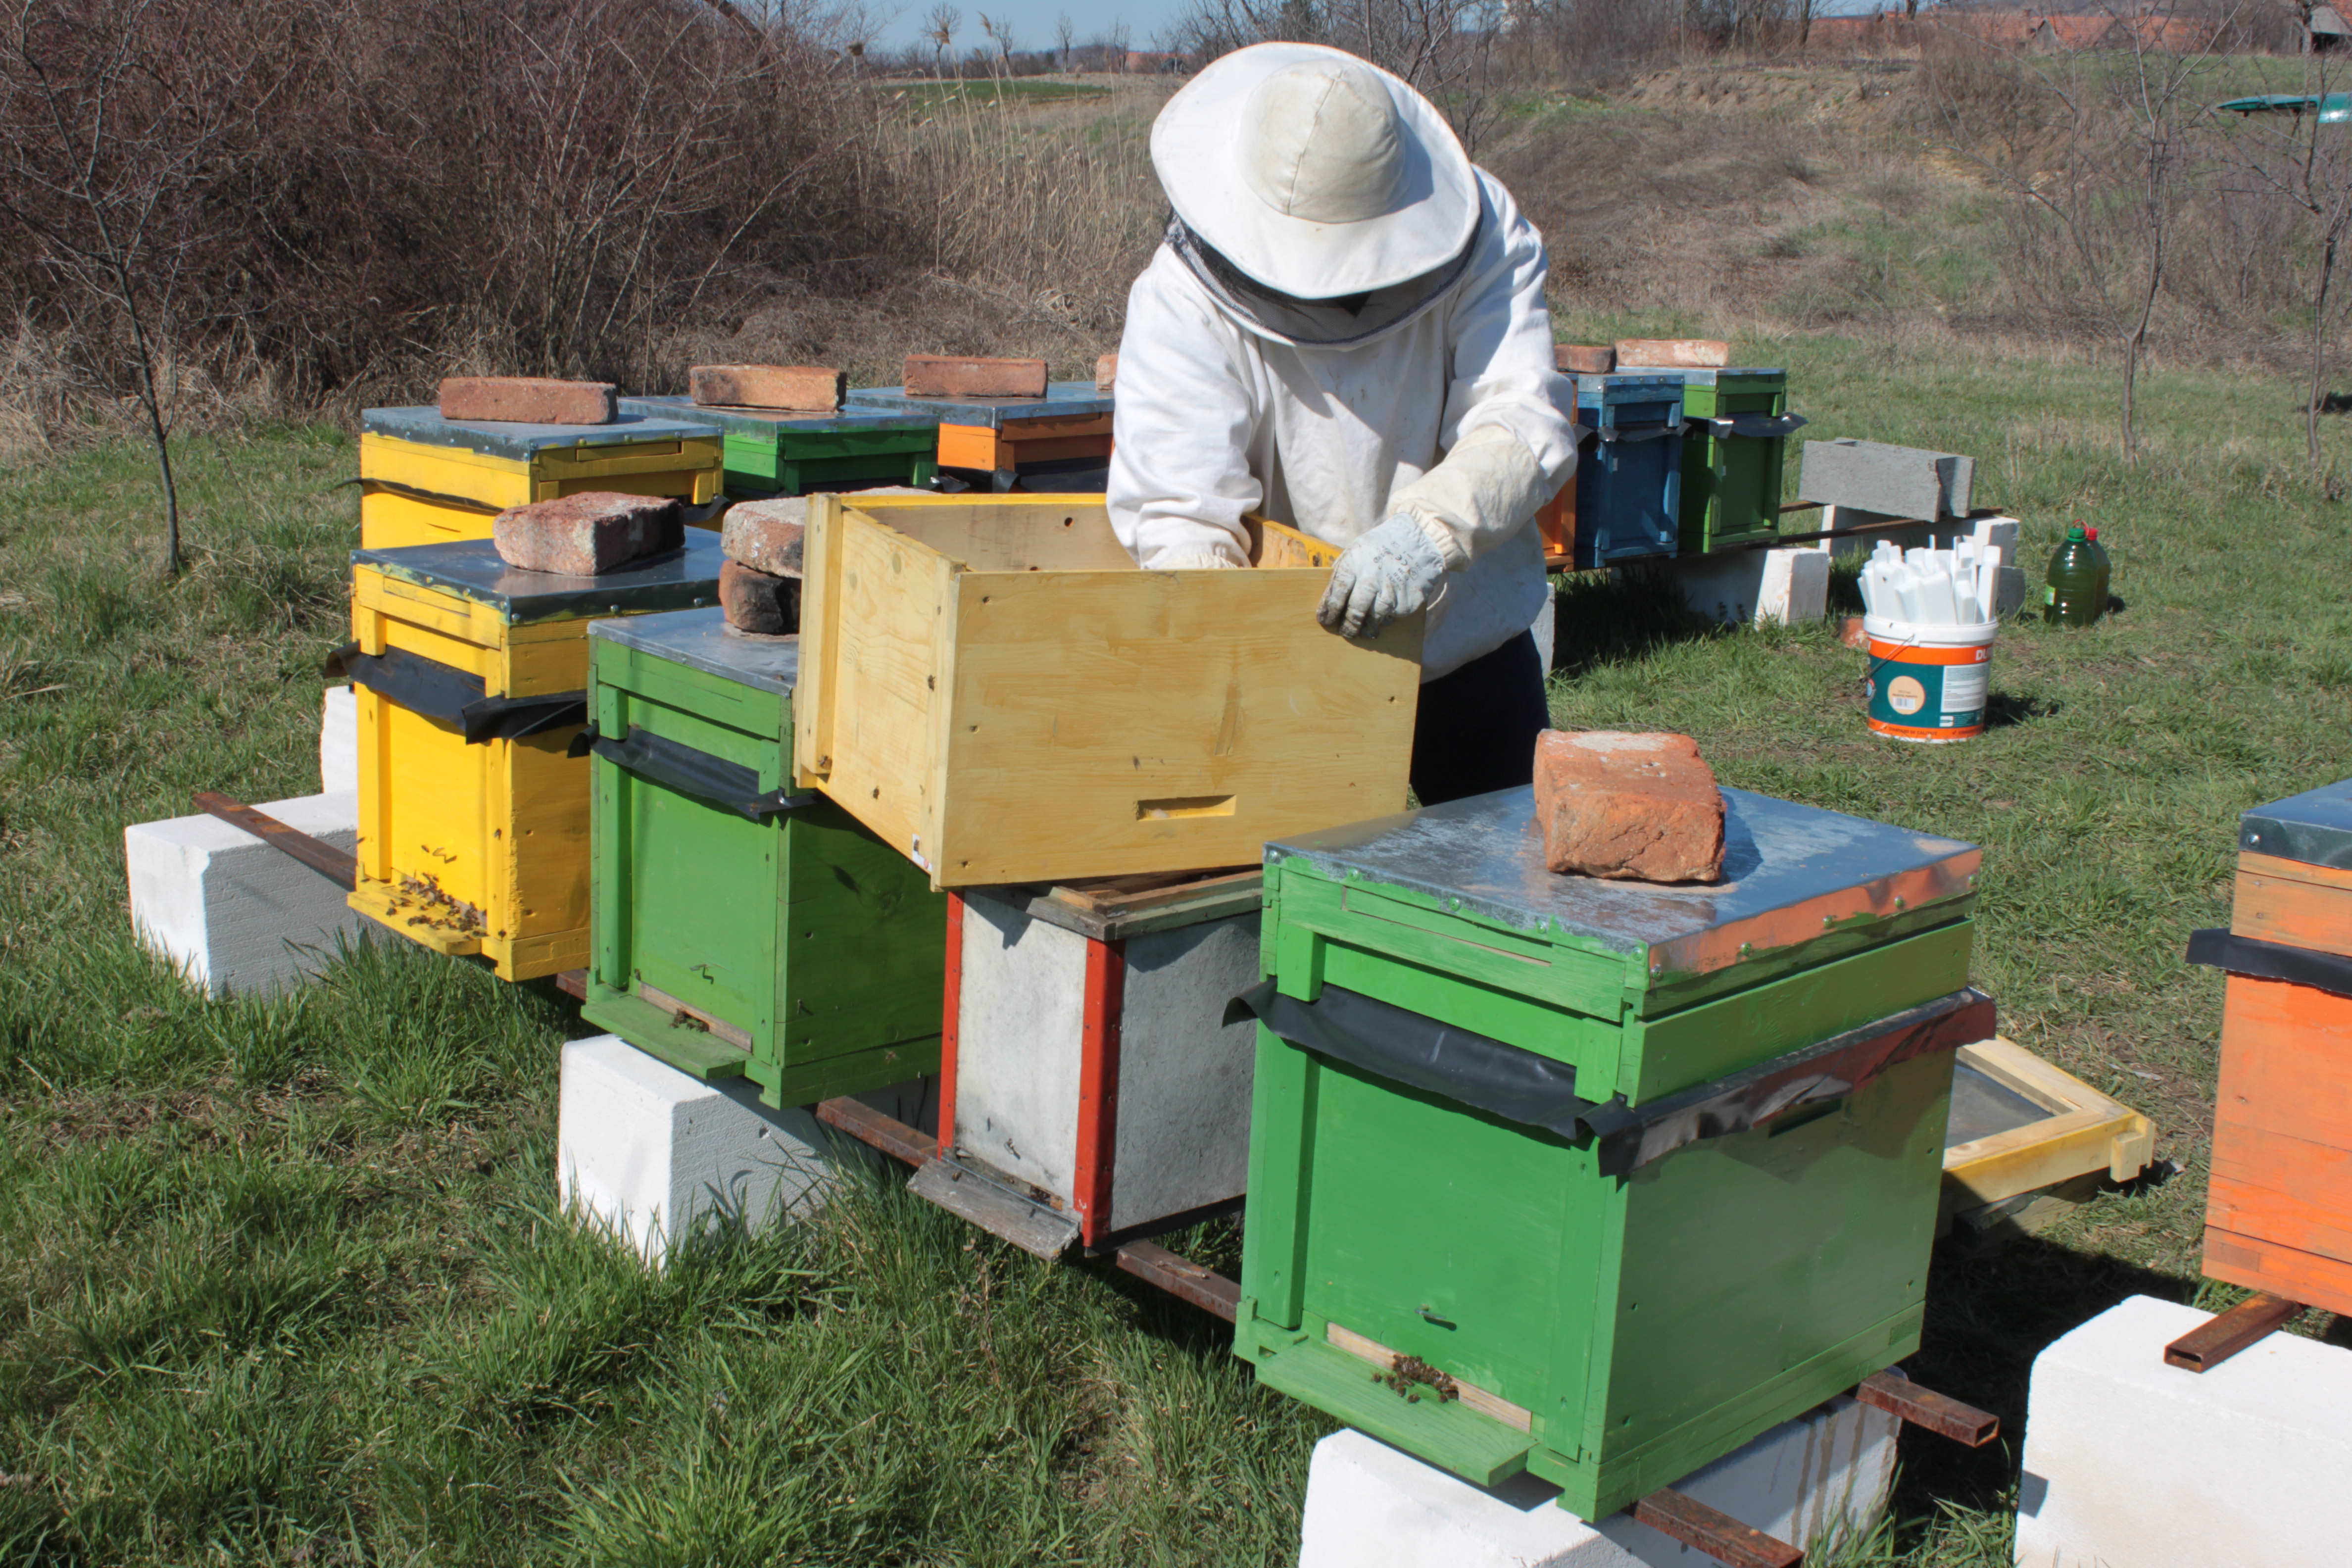 Telelési tapasztalataikról számoltak be a méhészek: Nem észlelnek nagy veszteségeket